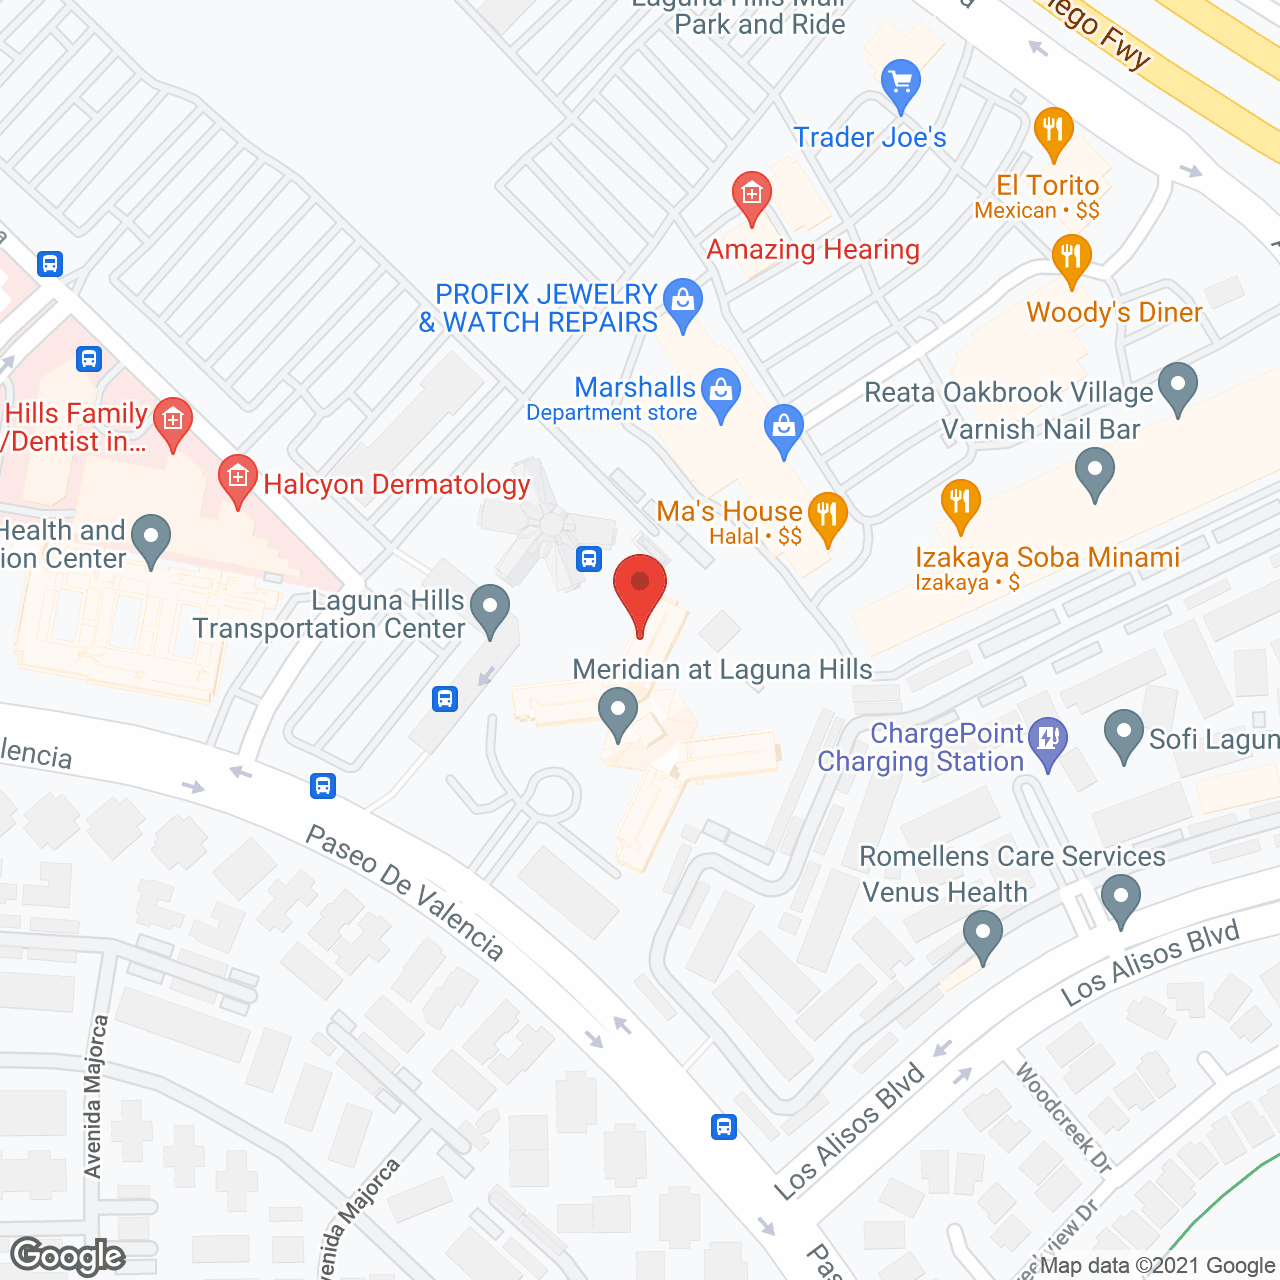 Meridian at Laguna Hills in google map